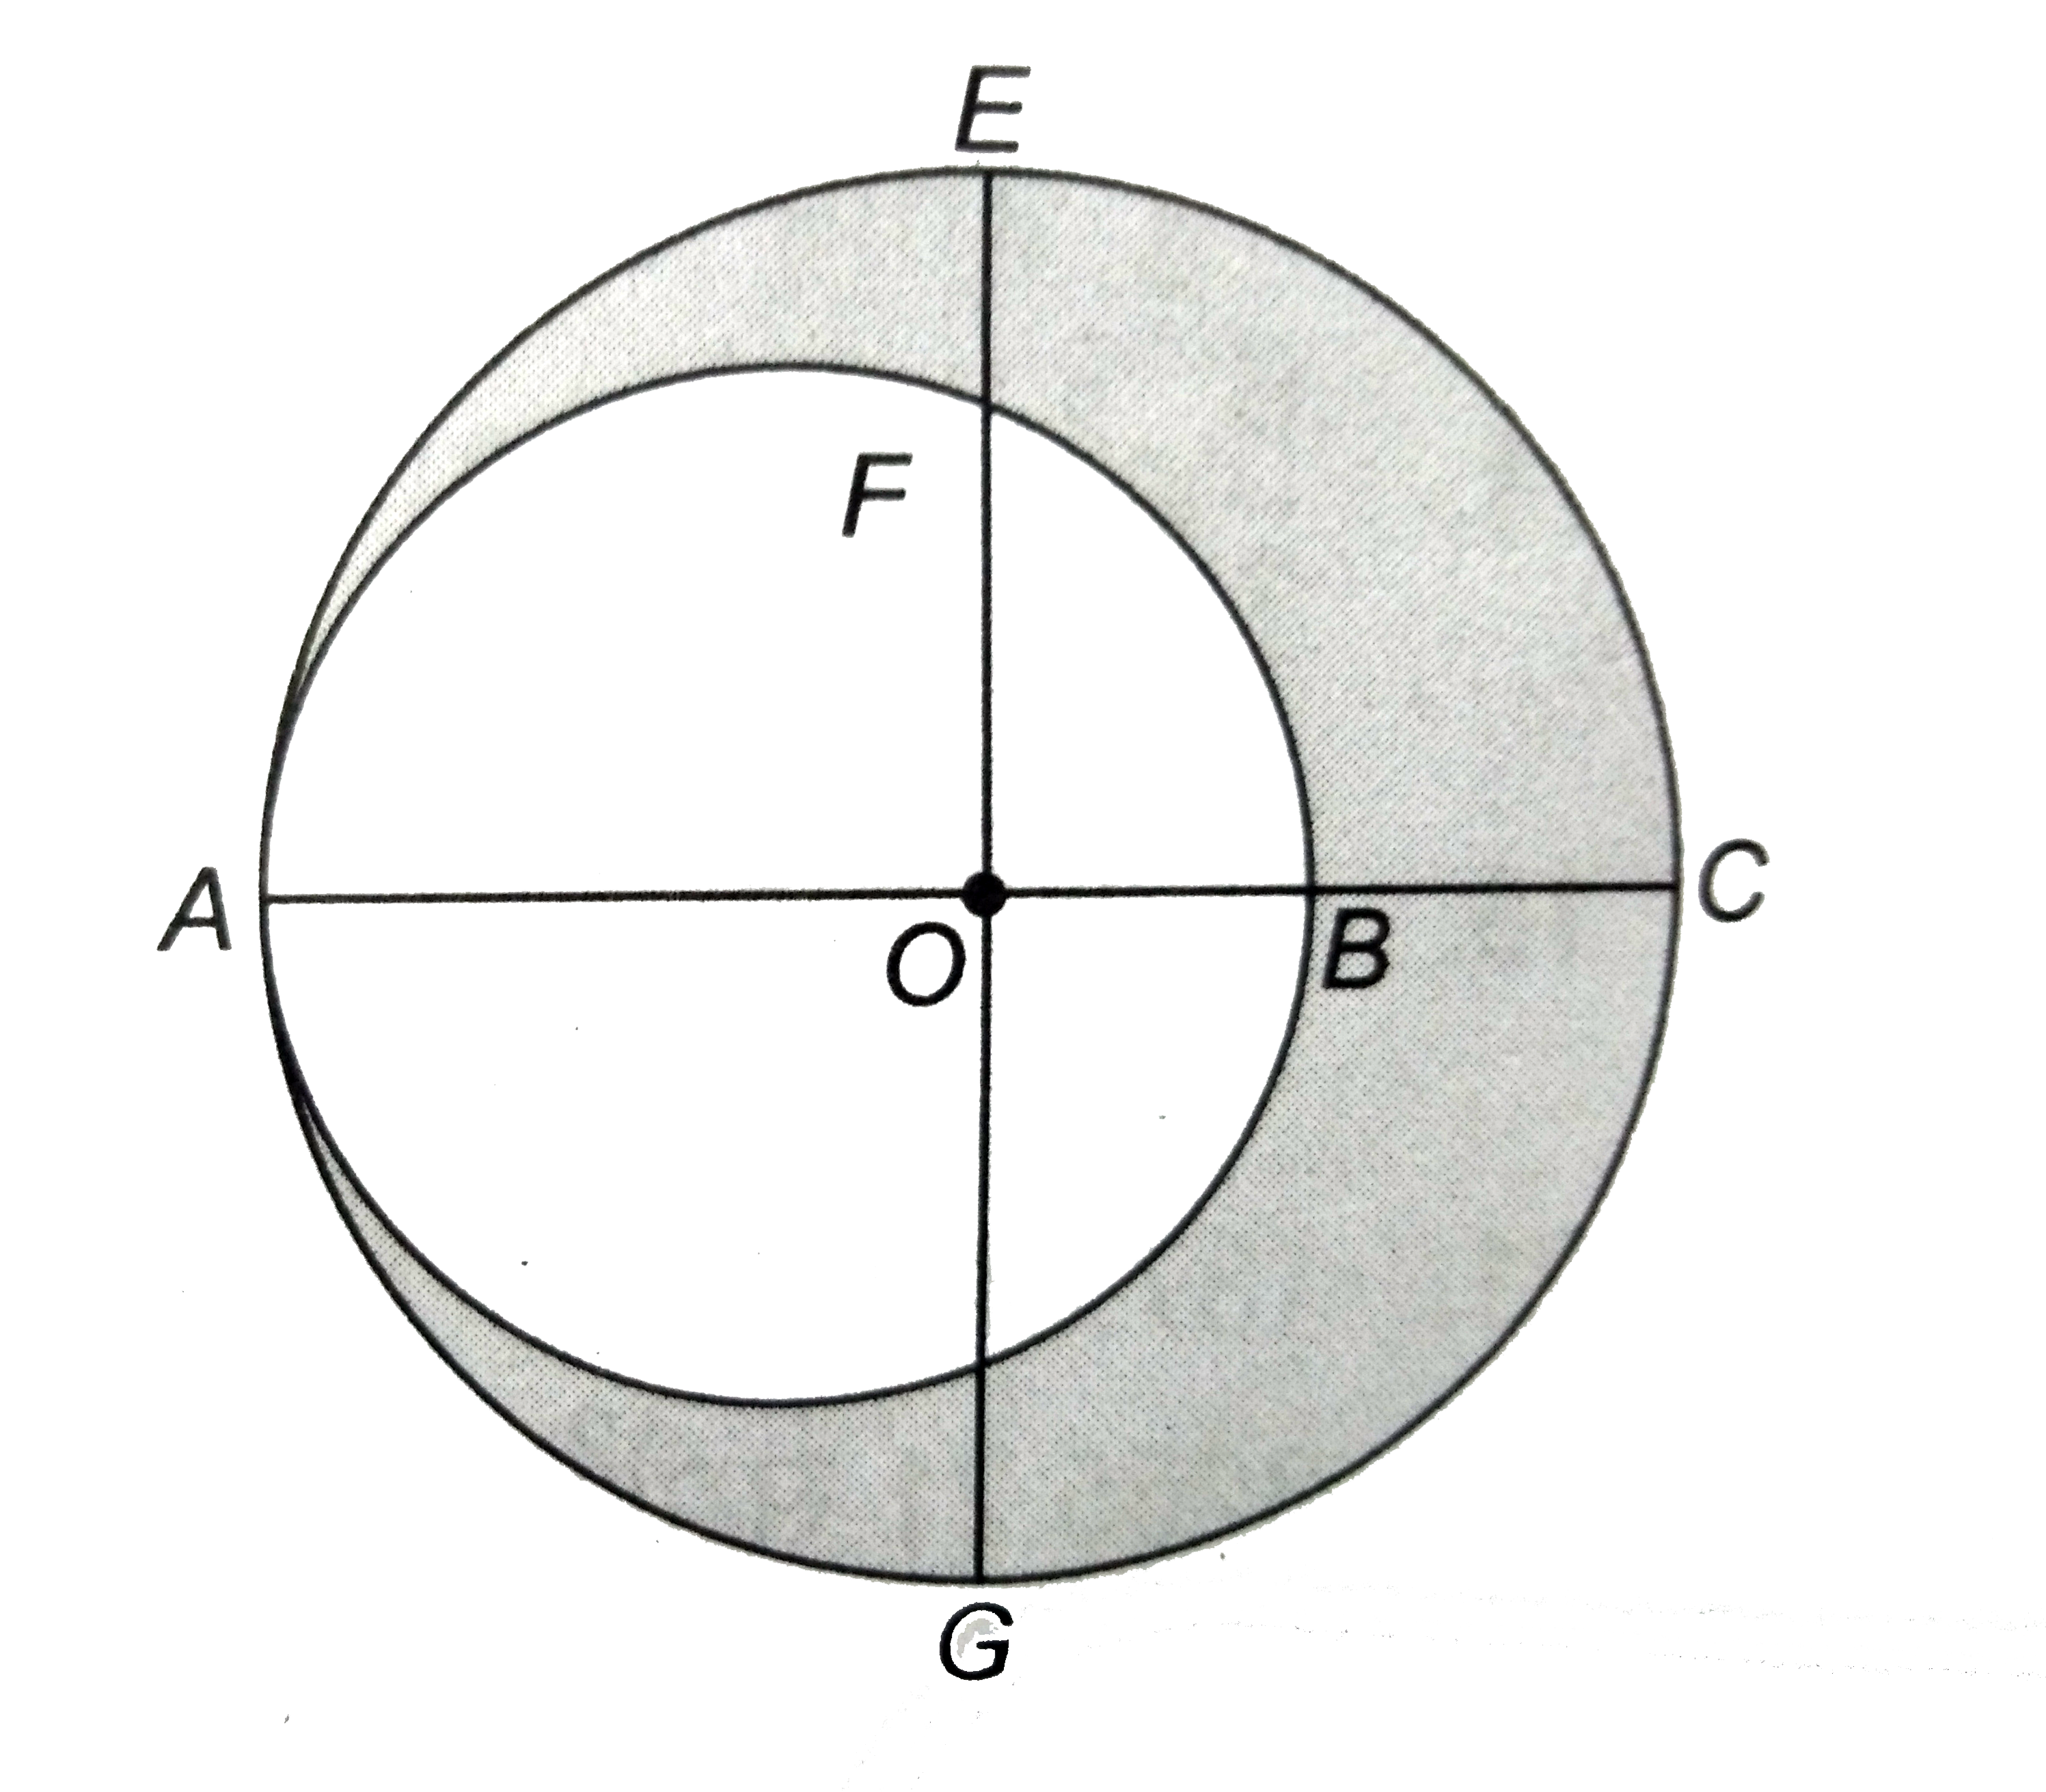 दिये चित्र में ,O  बड़े वृत्त का केंद्र और AC व्यास है । एक अन्य  वृत्त AB व्यास से खींचा  गया है  । यदि AC = 54 सेमी और BC = 10  सेमी है  तो छायांकित  भाग का क्षेत्रफल  ज्ञात कीजिए ।